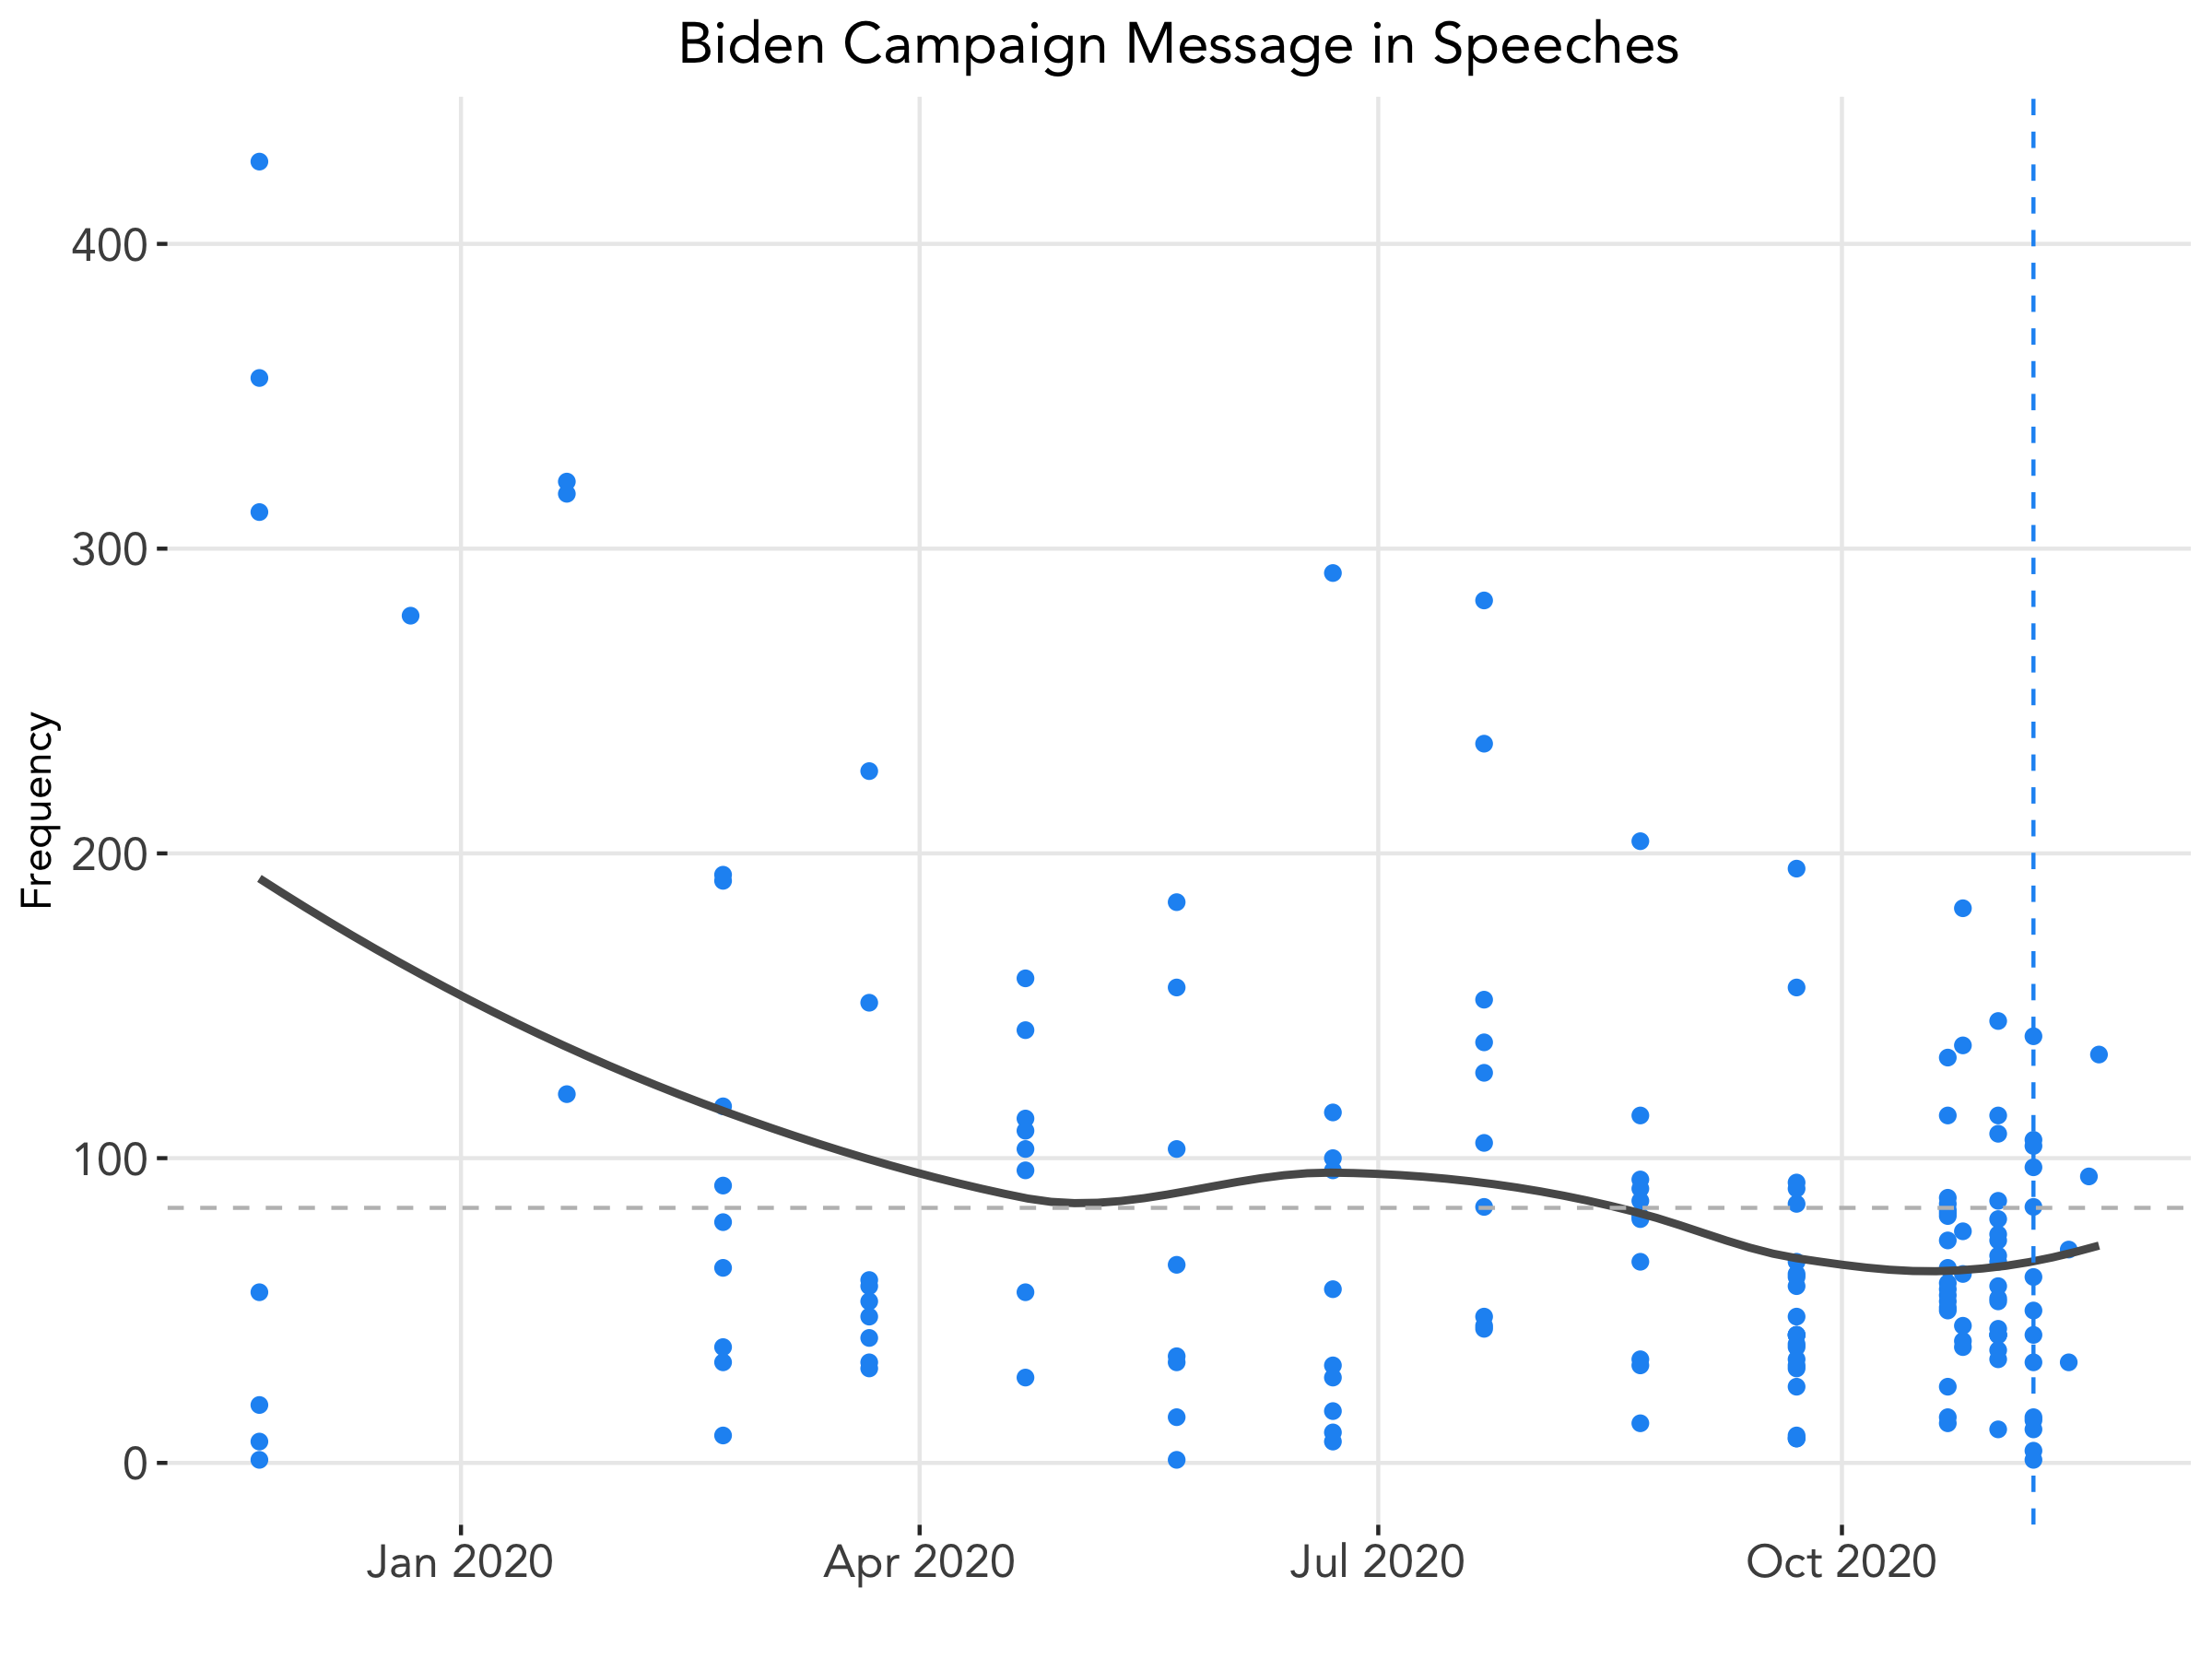 Biden Speech Across Time